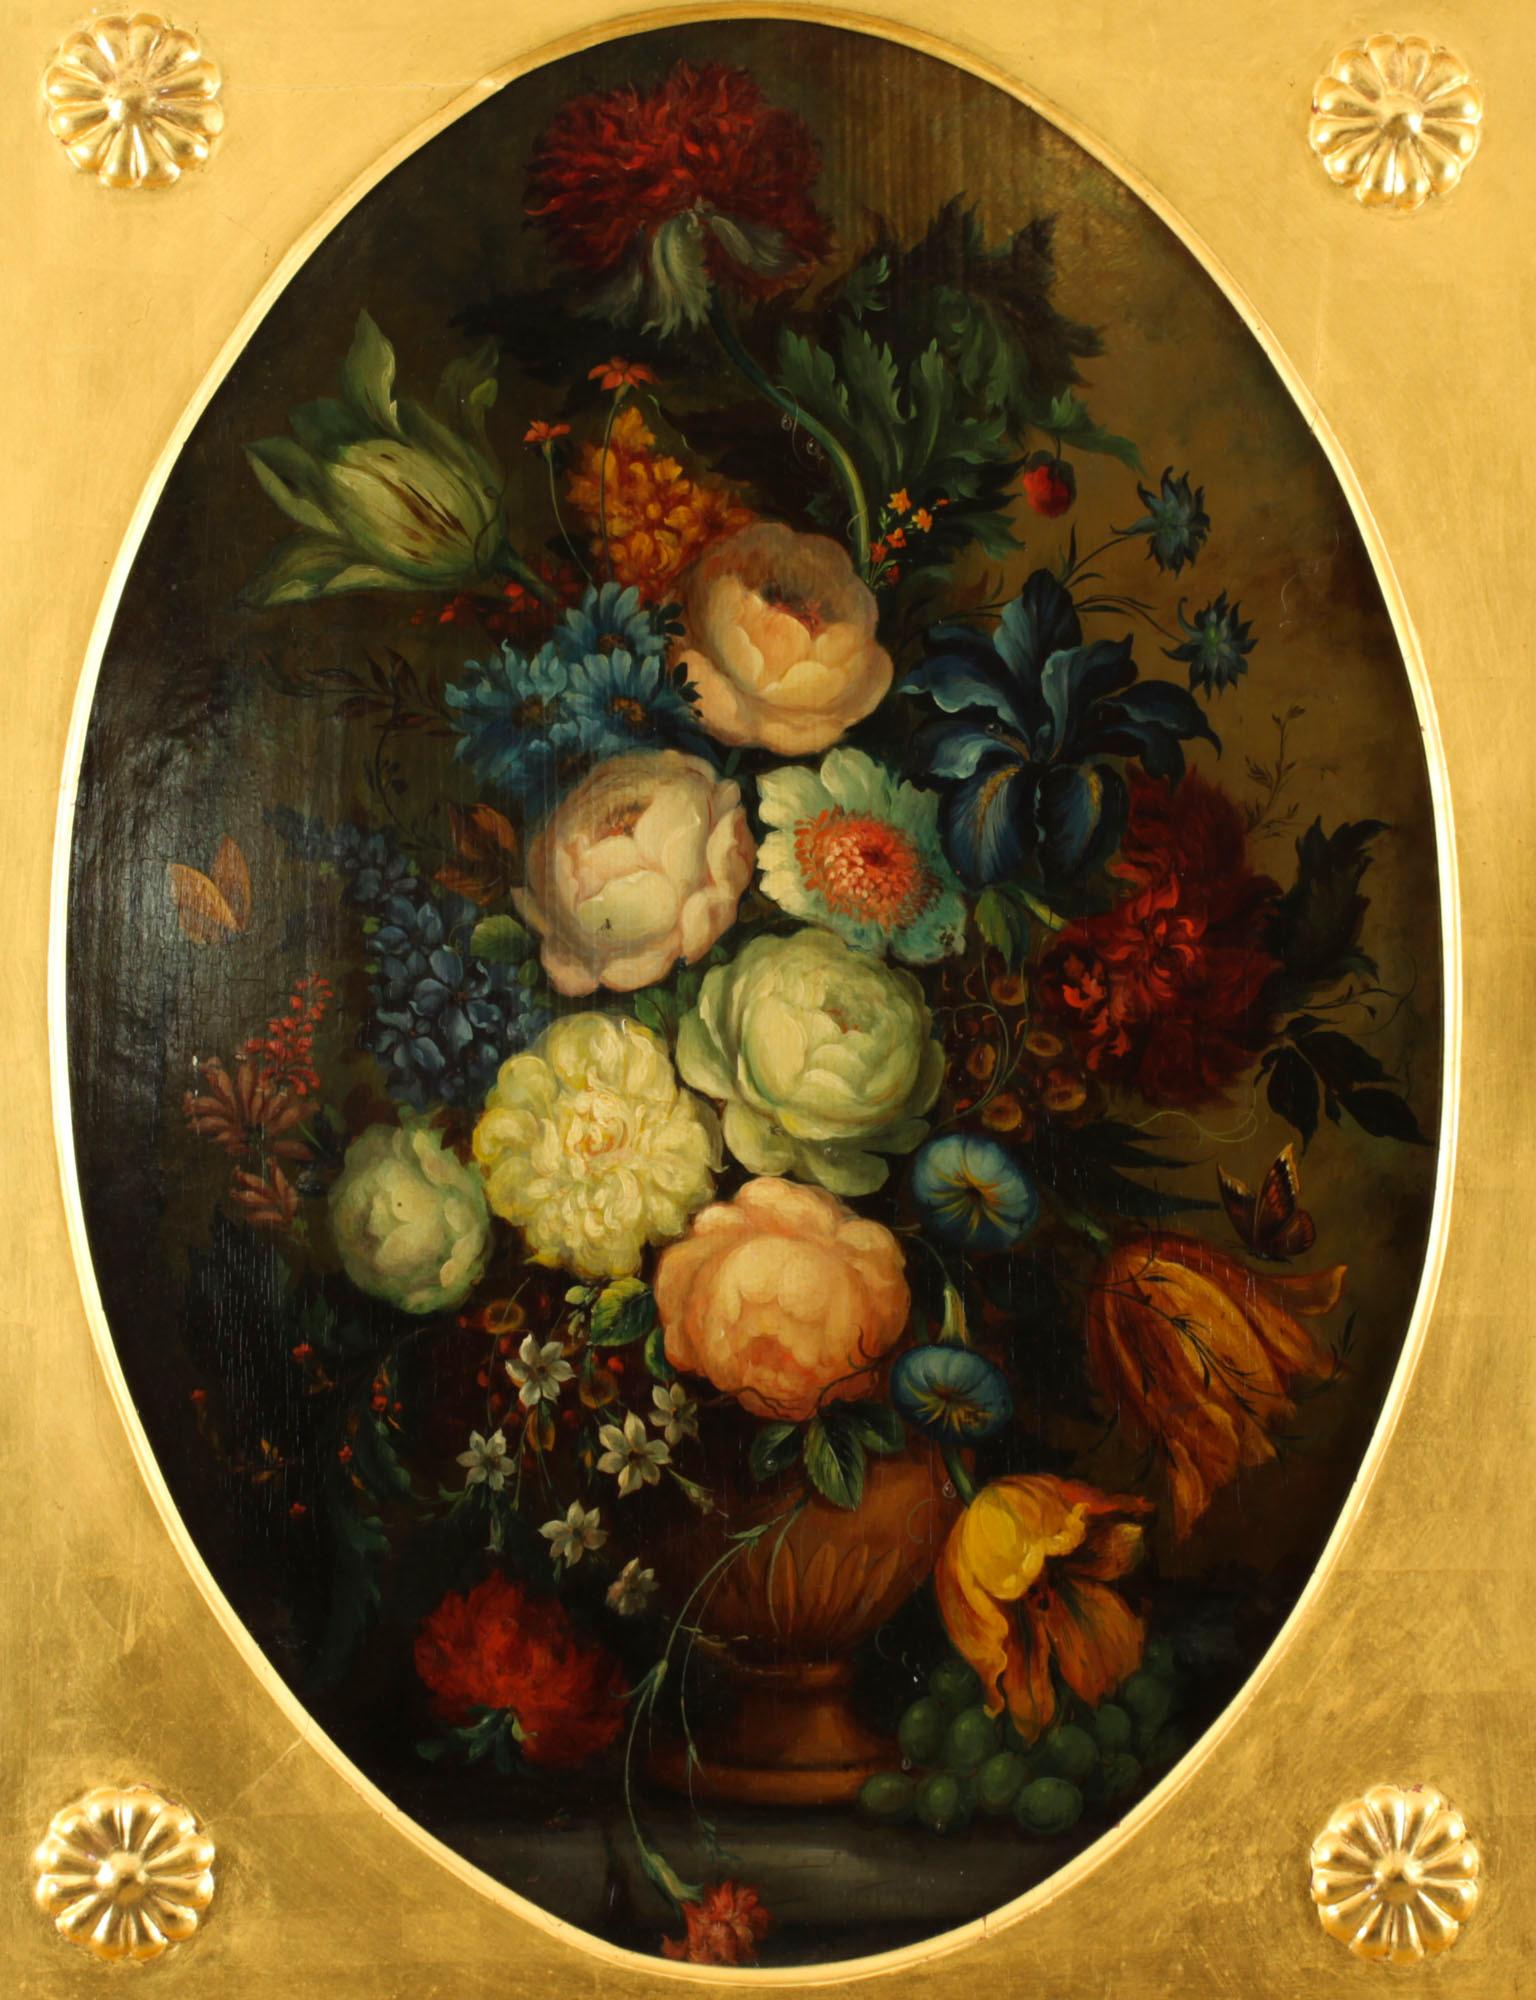 Il s'agit d'une belle huile ancienne sur panneau de l'école anglaise représentant une nature morte, datant du 19e siècle.

La peinture à l'huile sur panneau représente une belle nature morte de roses, d'iris, de papillons et d'autres fleurs dans une